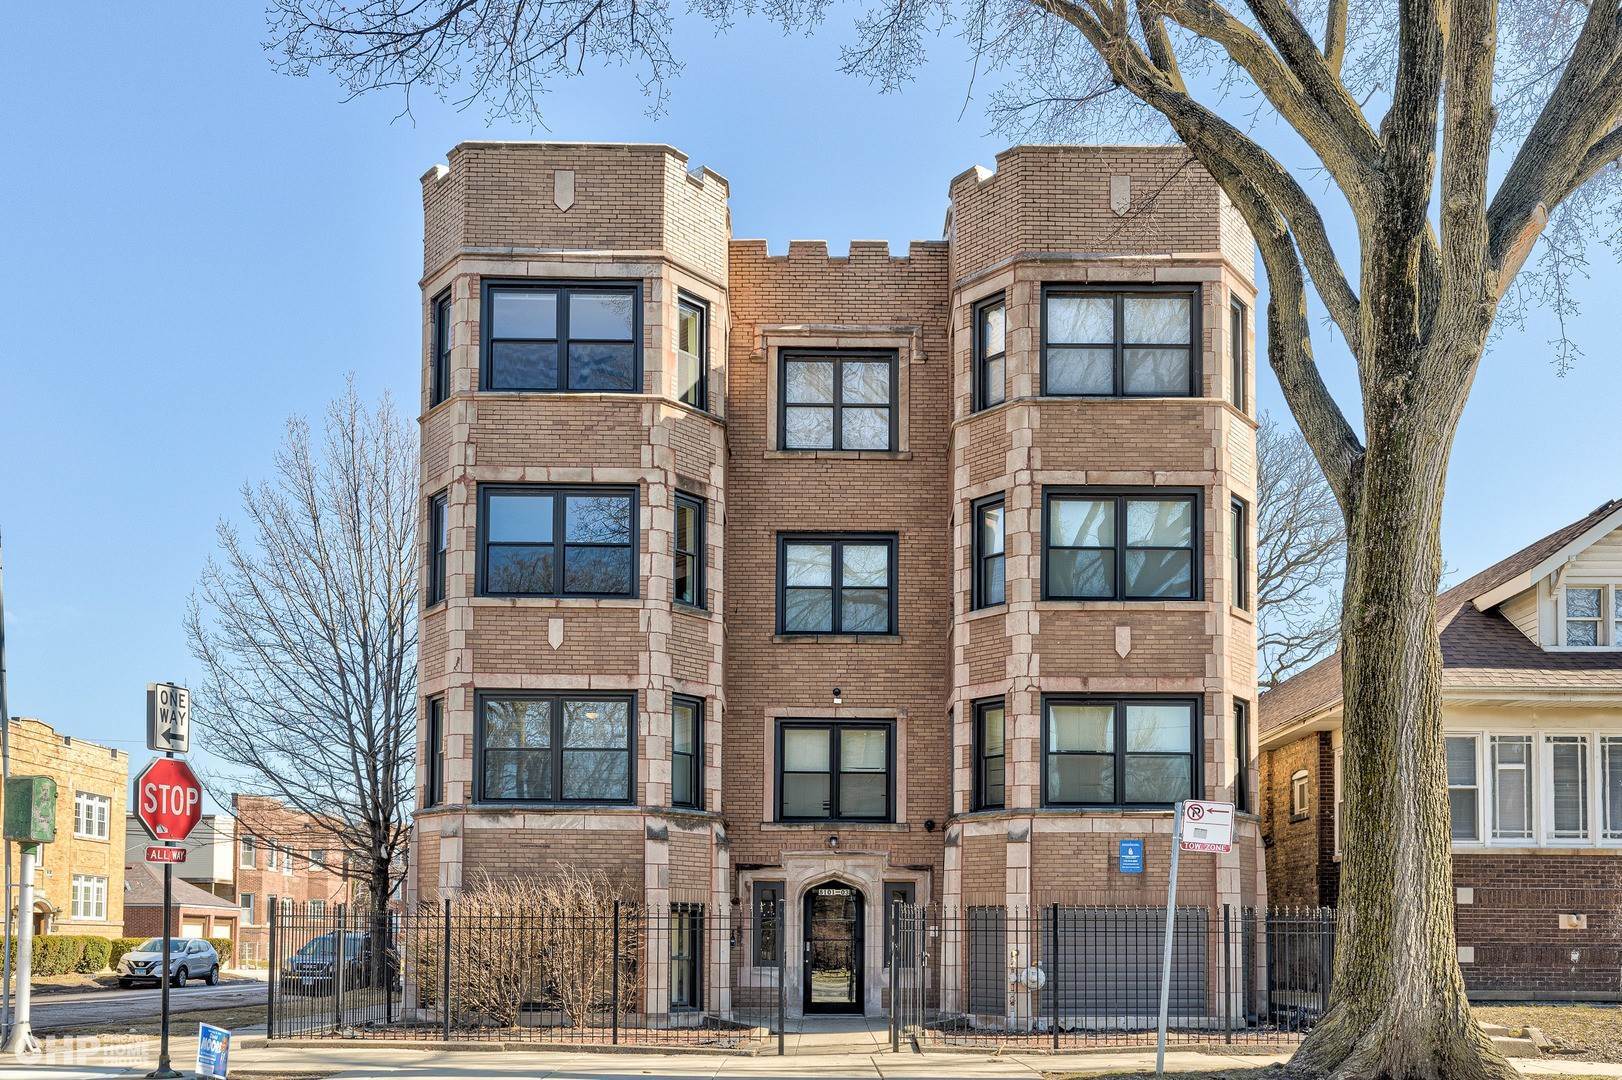 Condominium at Auburn Gresham, Chicago, IL 60620